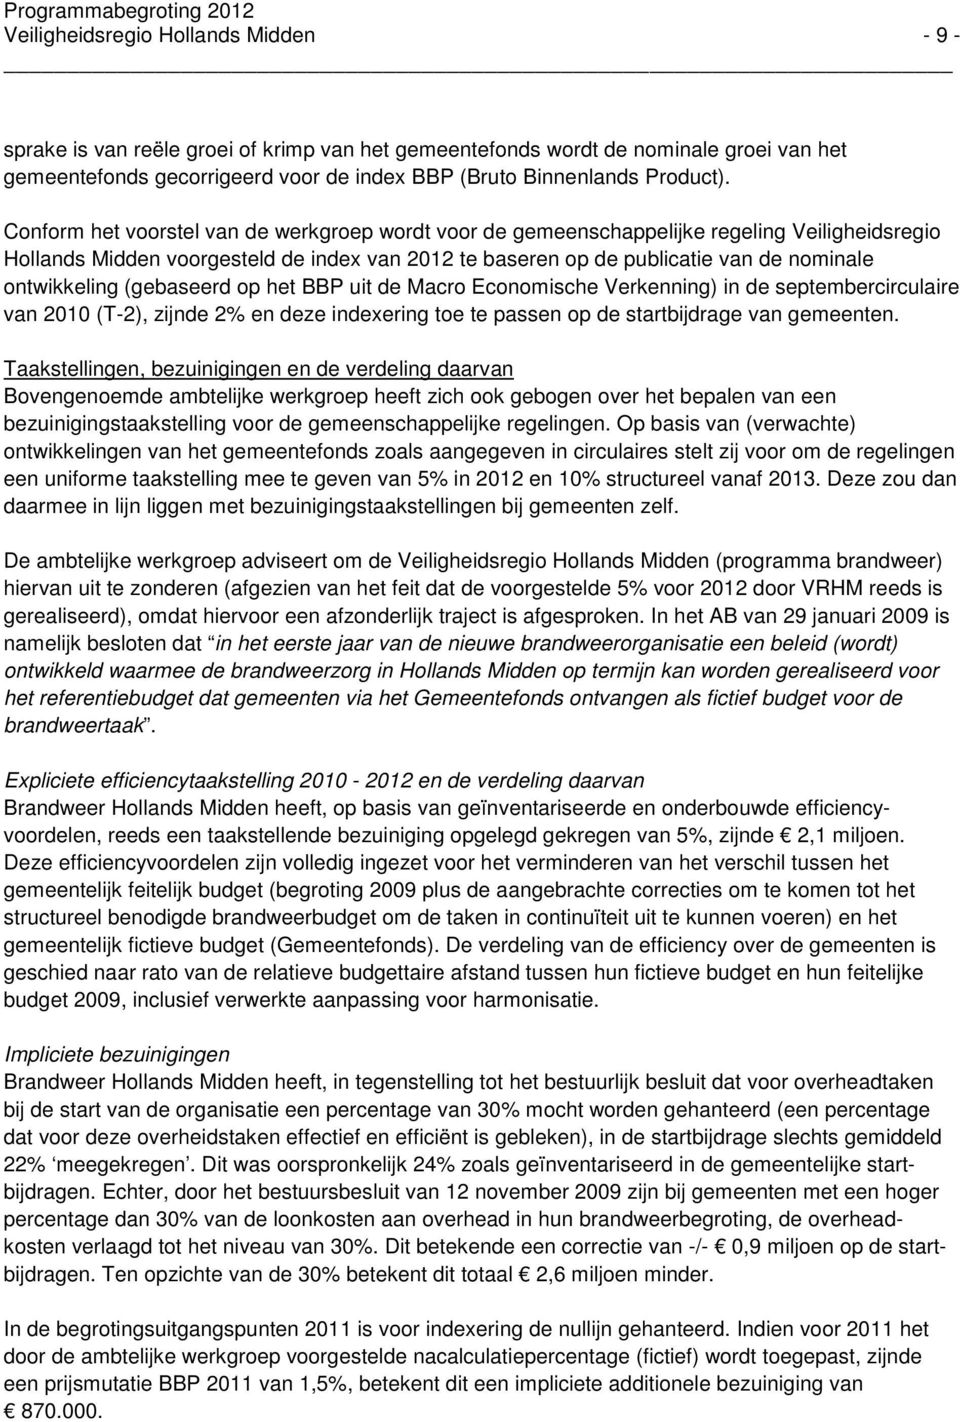 Conform het voorstel van de werkgroep wordt voor de gemeenschappelijke regeling Veiligheidsregio Hollands Midden voorgesteld de index van 2012 te baseren op de publicatie van de nominale ontwikkeling